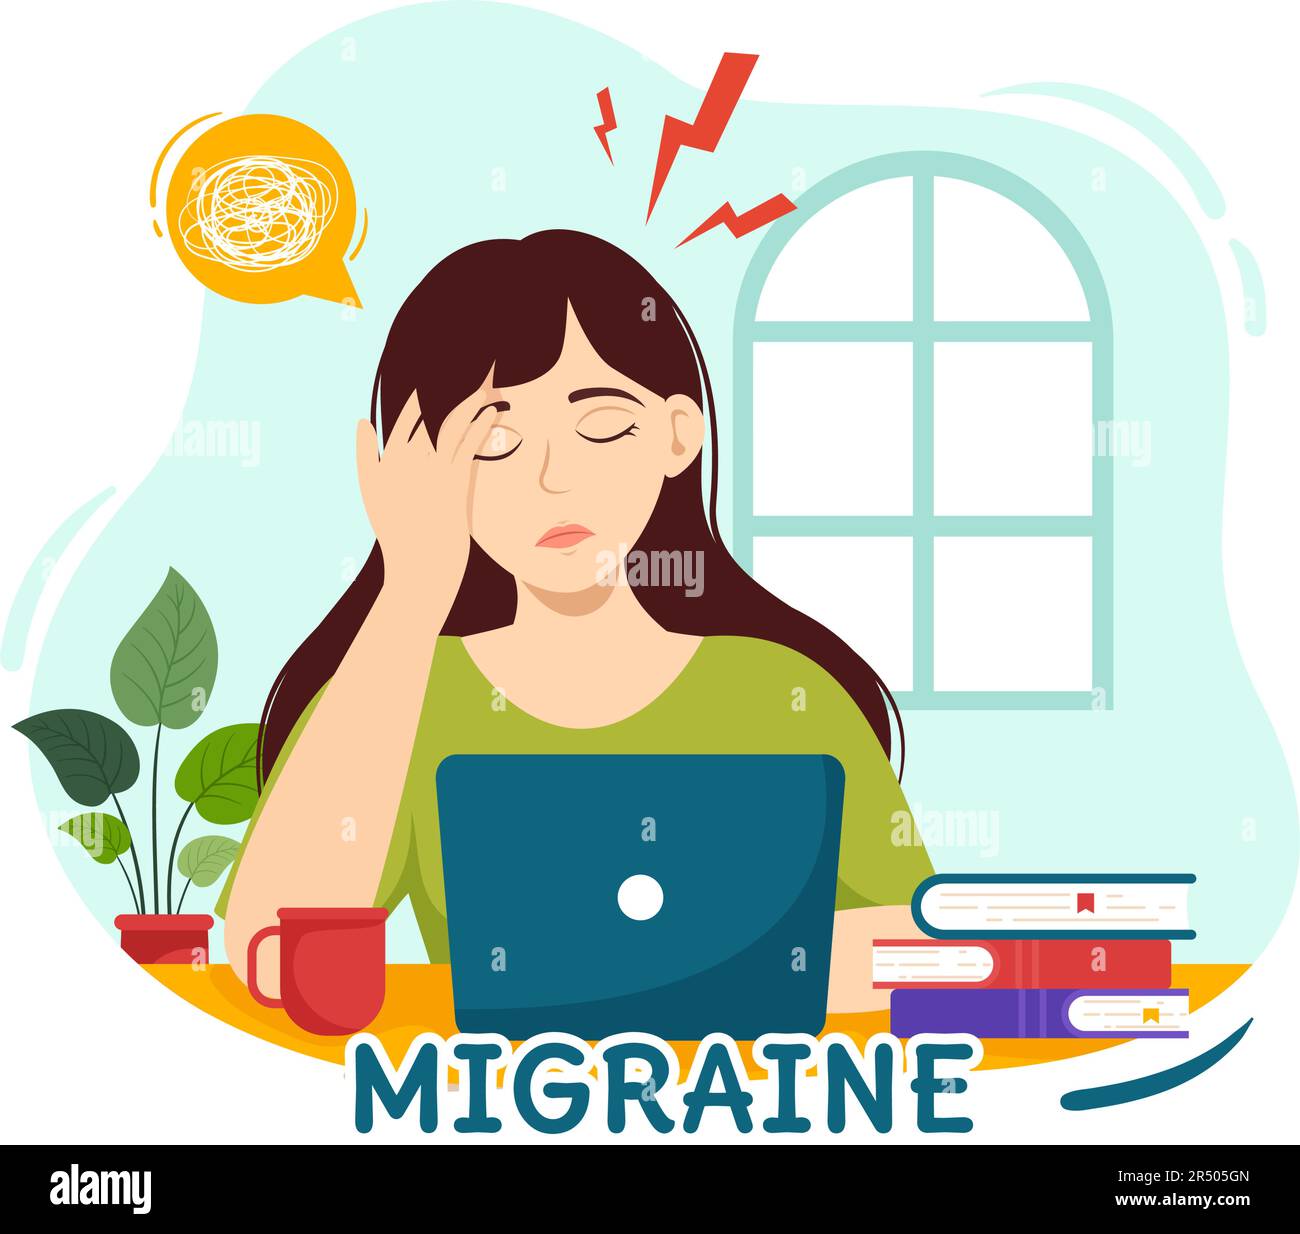 Migräne Vektor Illustration Menschen leiden unter Kopfschmerzen, Stress und Migräne im Gesundheitswesen flache Cartoon Hand Drawn Background Templates Stock Vektor